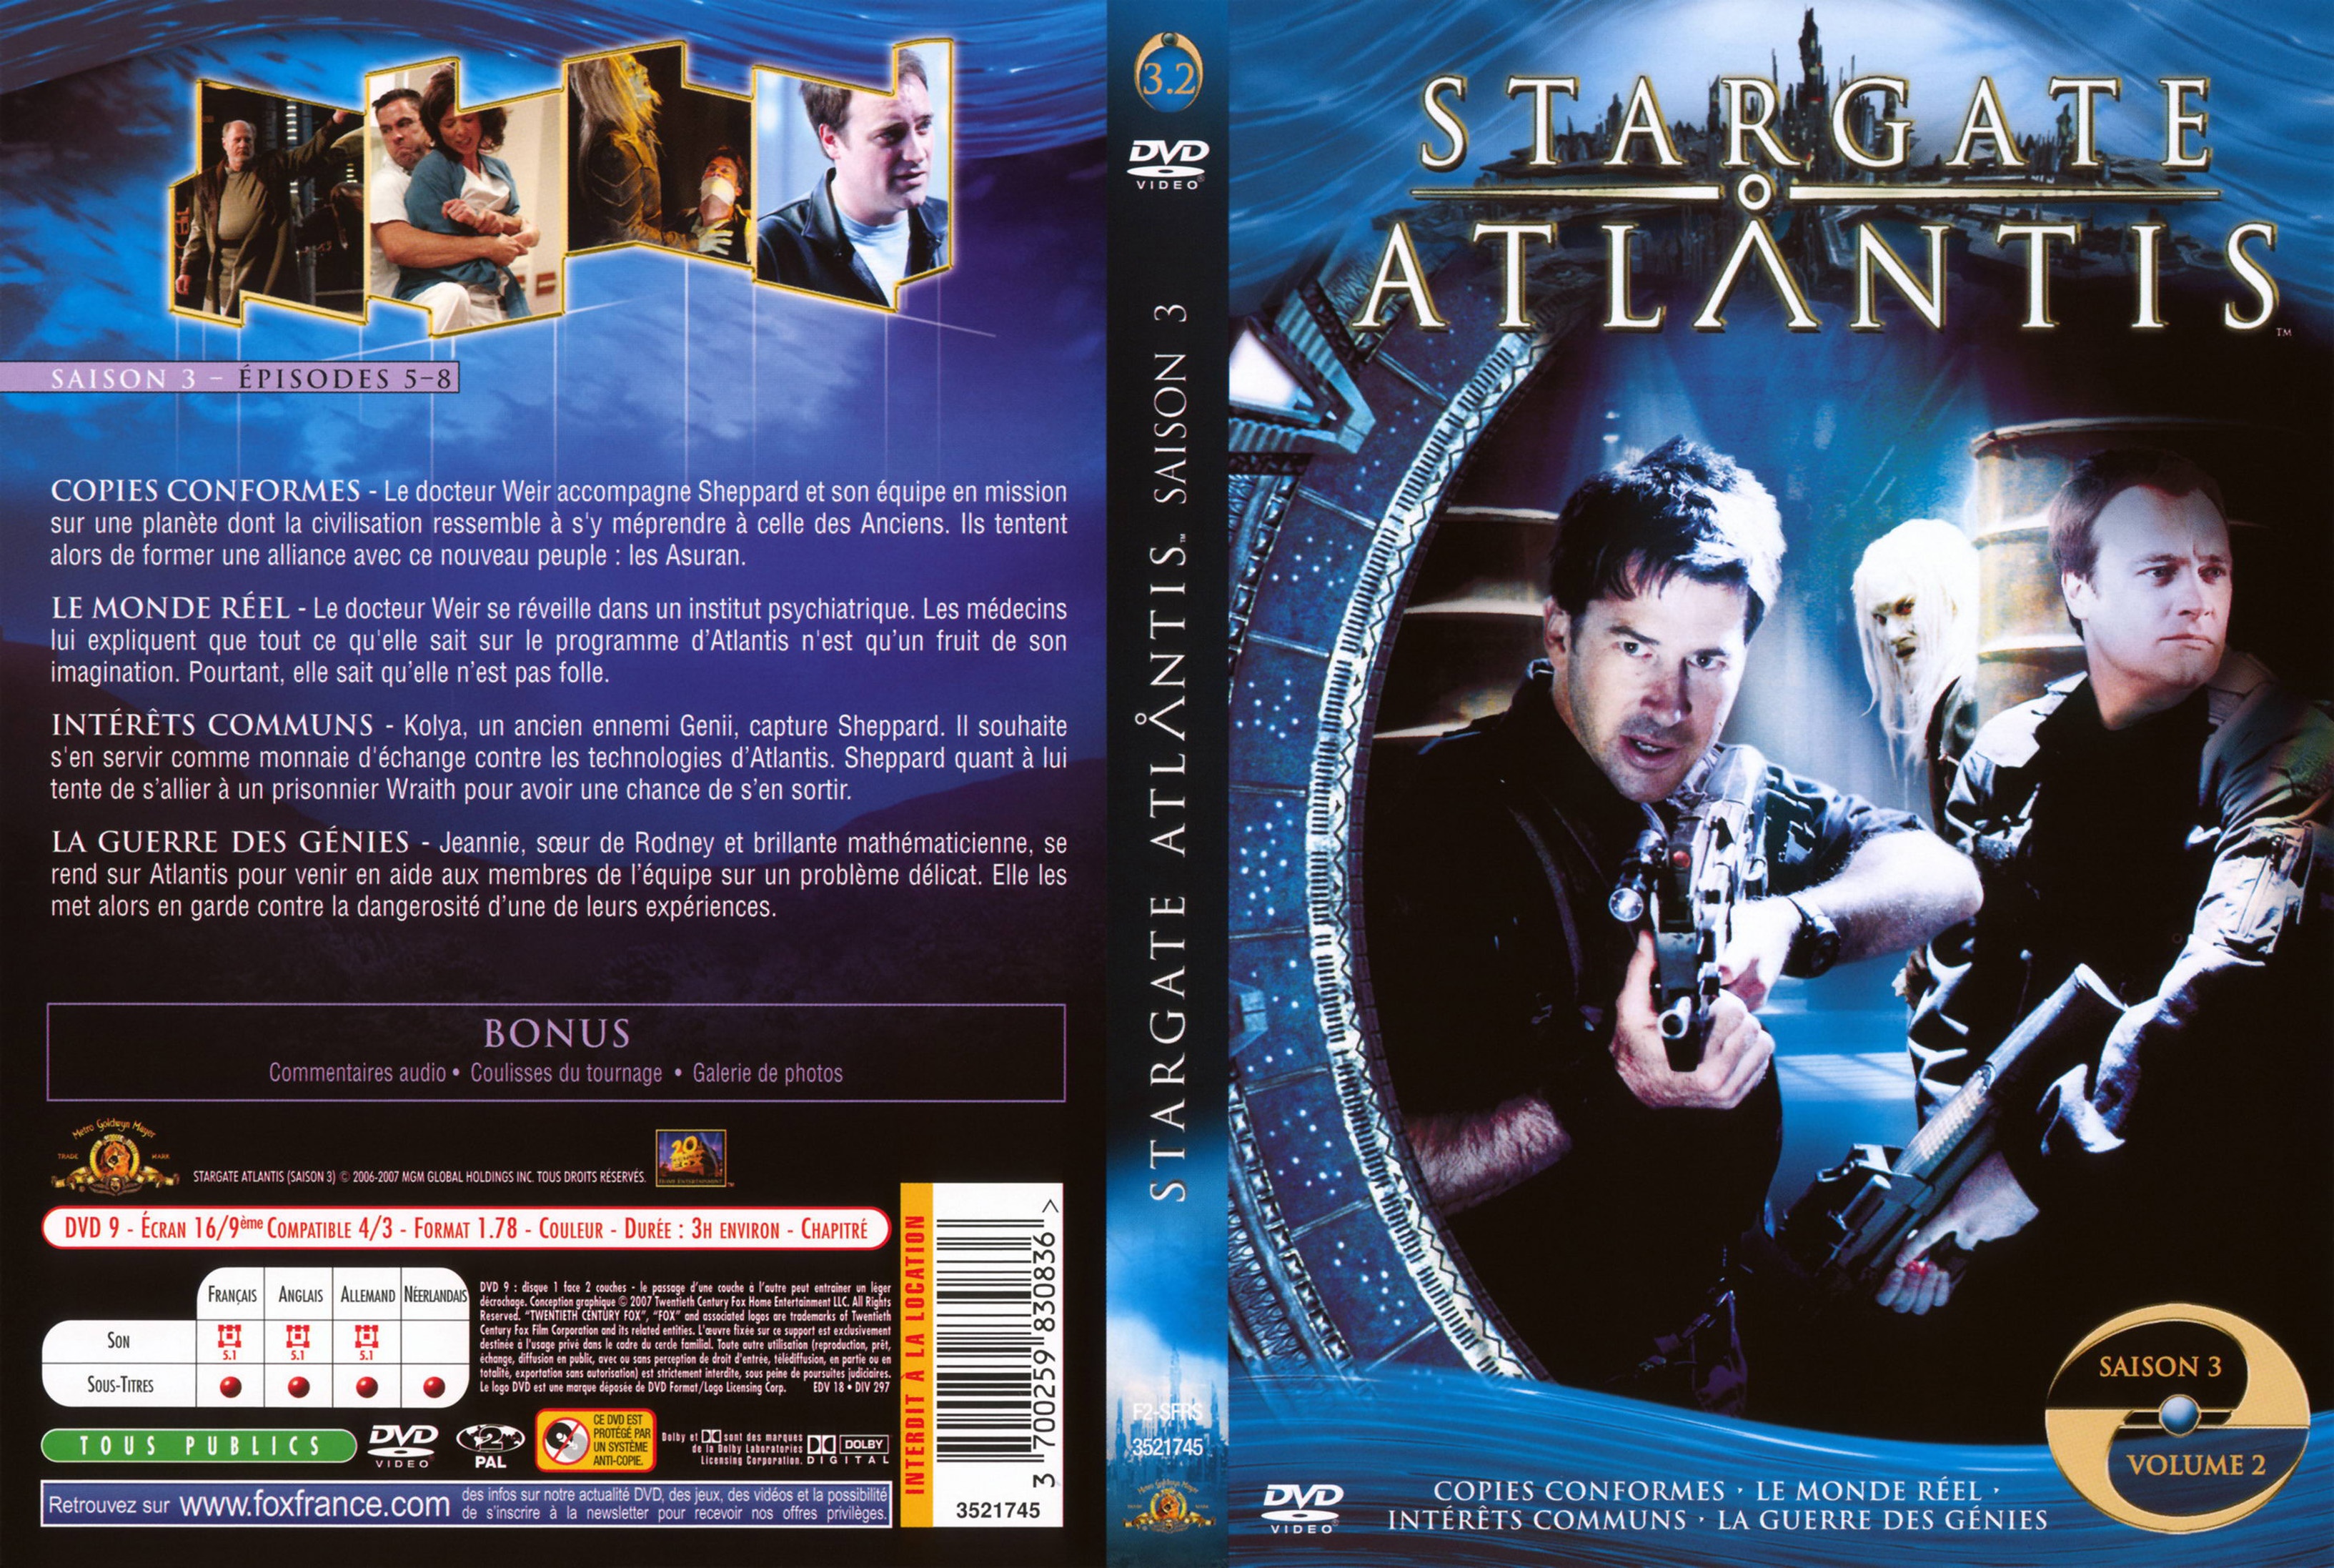 Jaquette DVD Stargate Atlantis Saison 3 vol 2